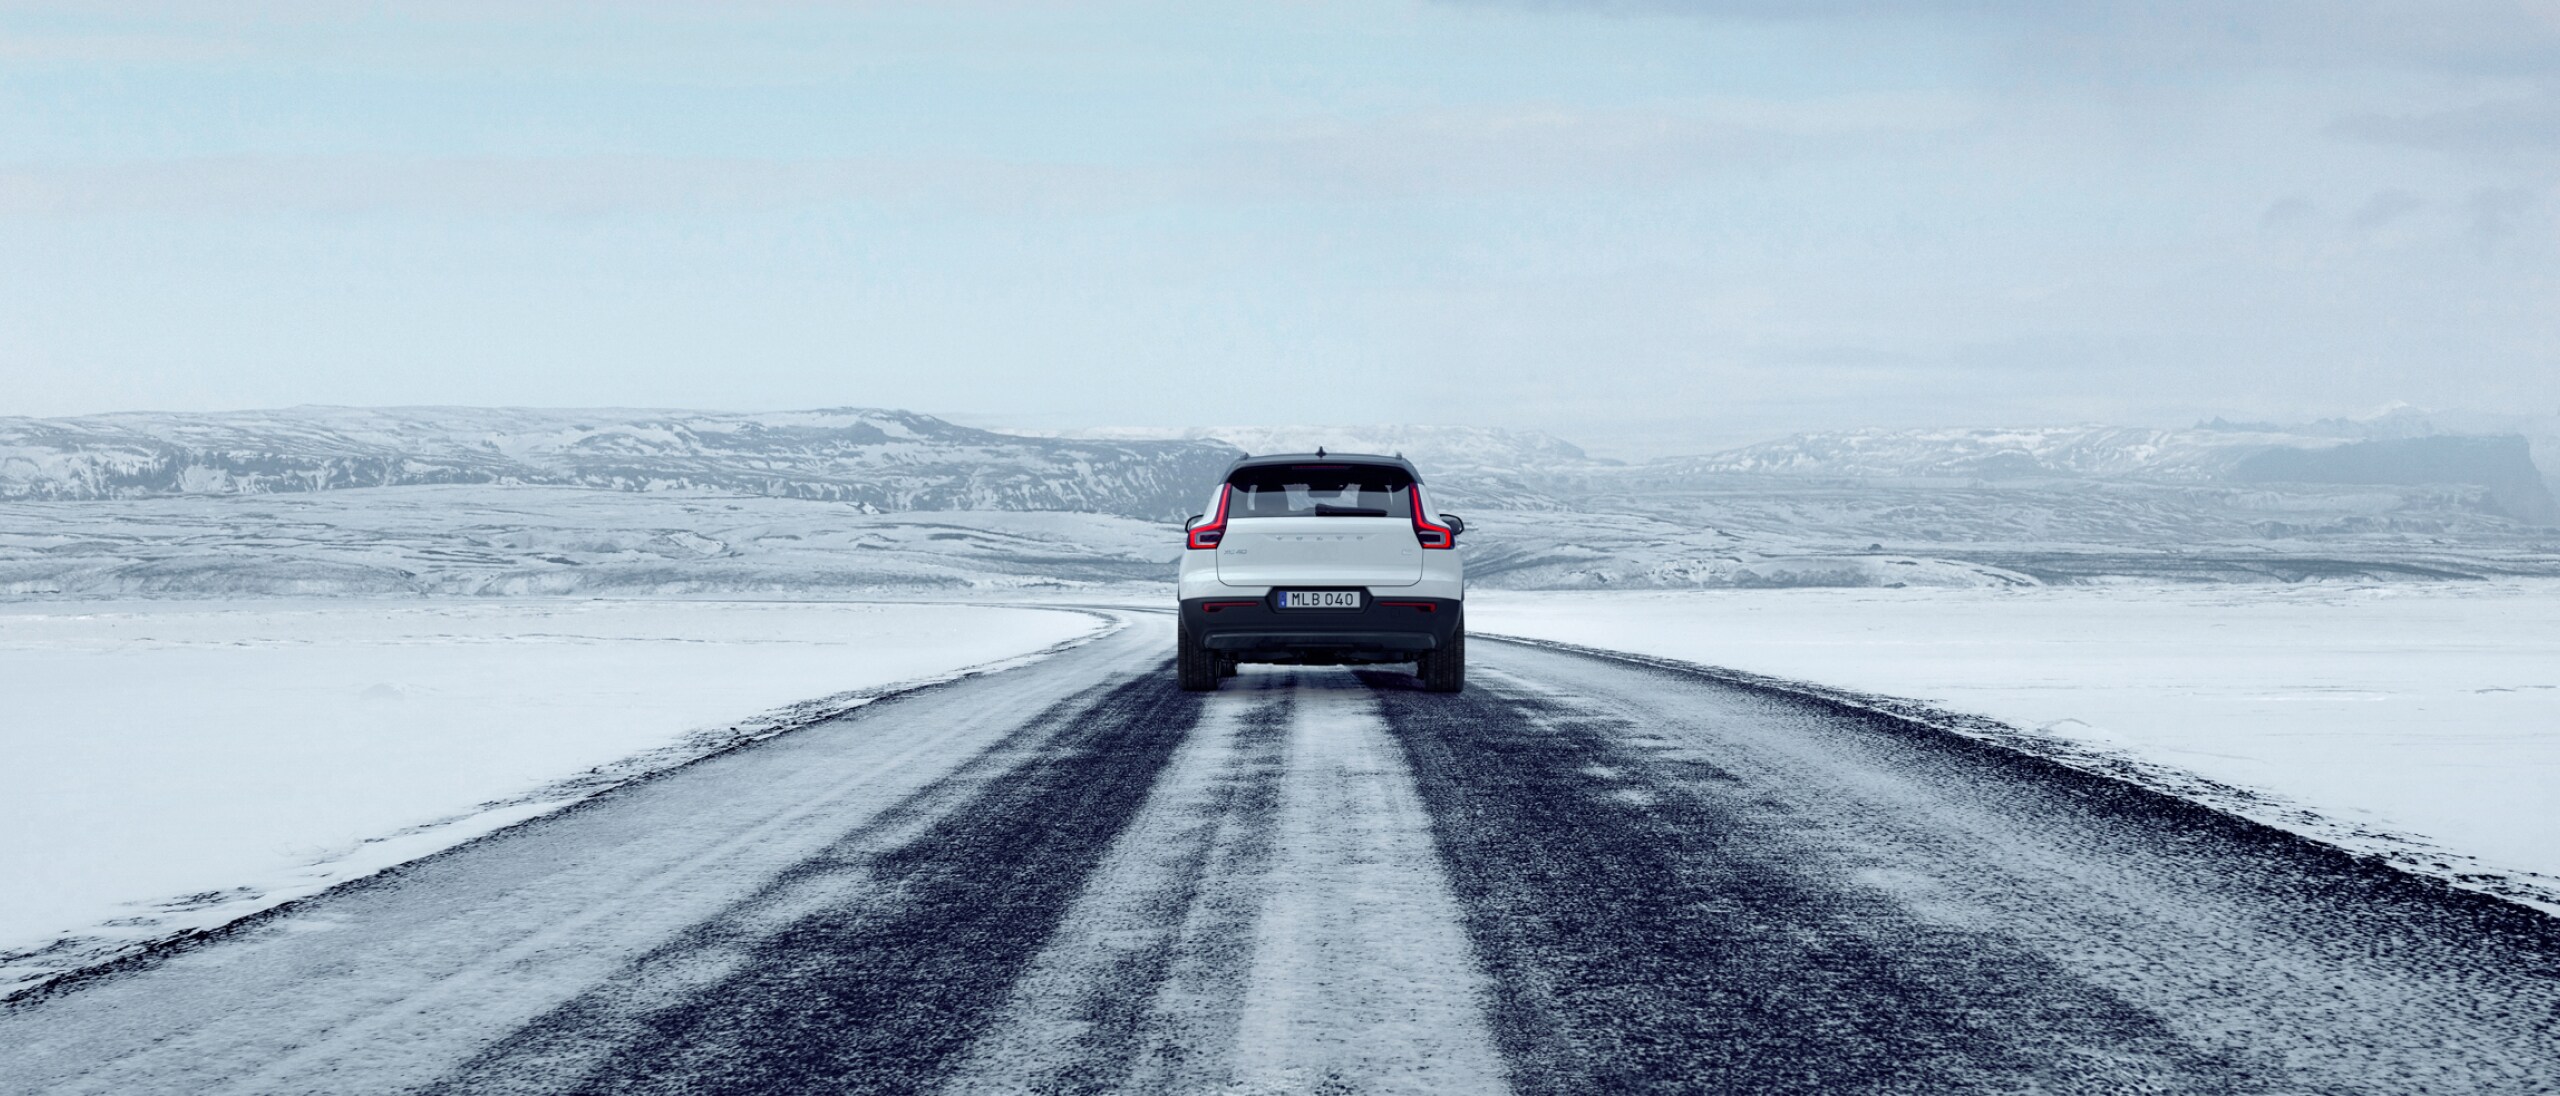 白色 VOLVO XC40 行驶在结冰路面的后视图。